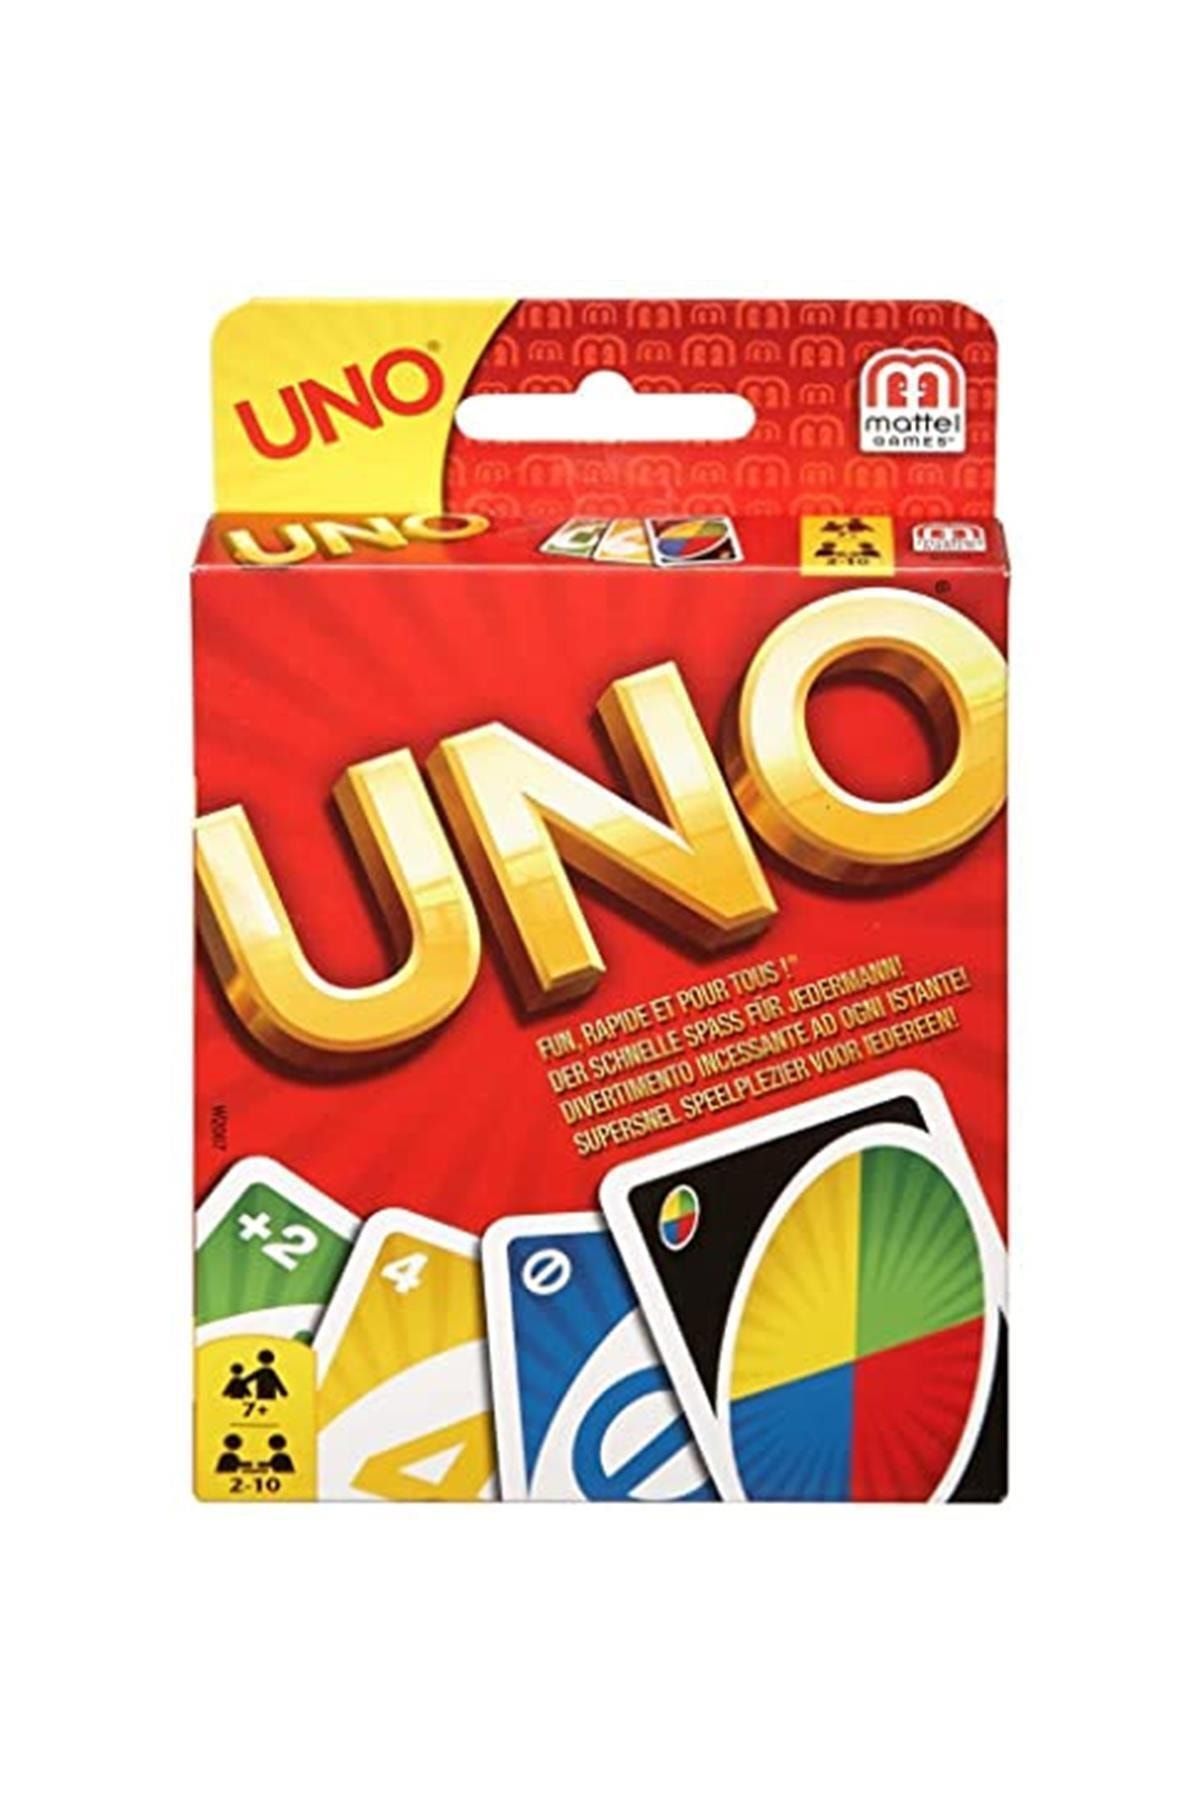 Mattel Uno Oyun Kartları W2087 Kategori: Oyun Kartları